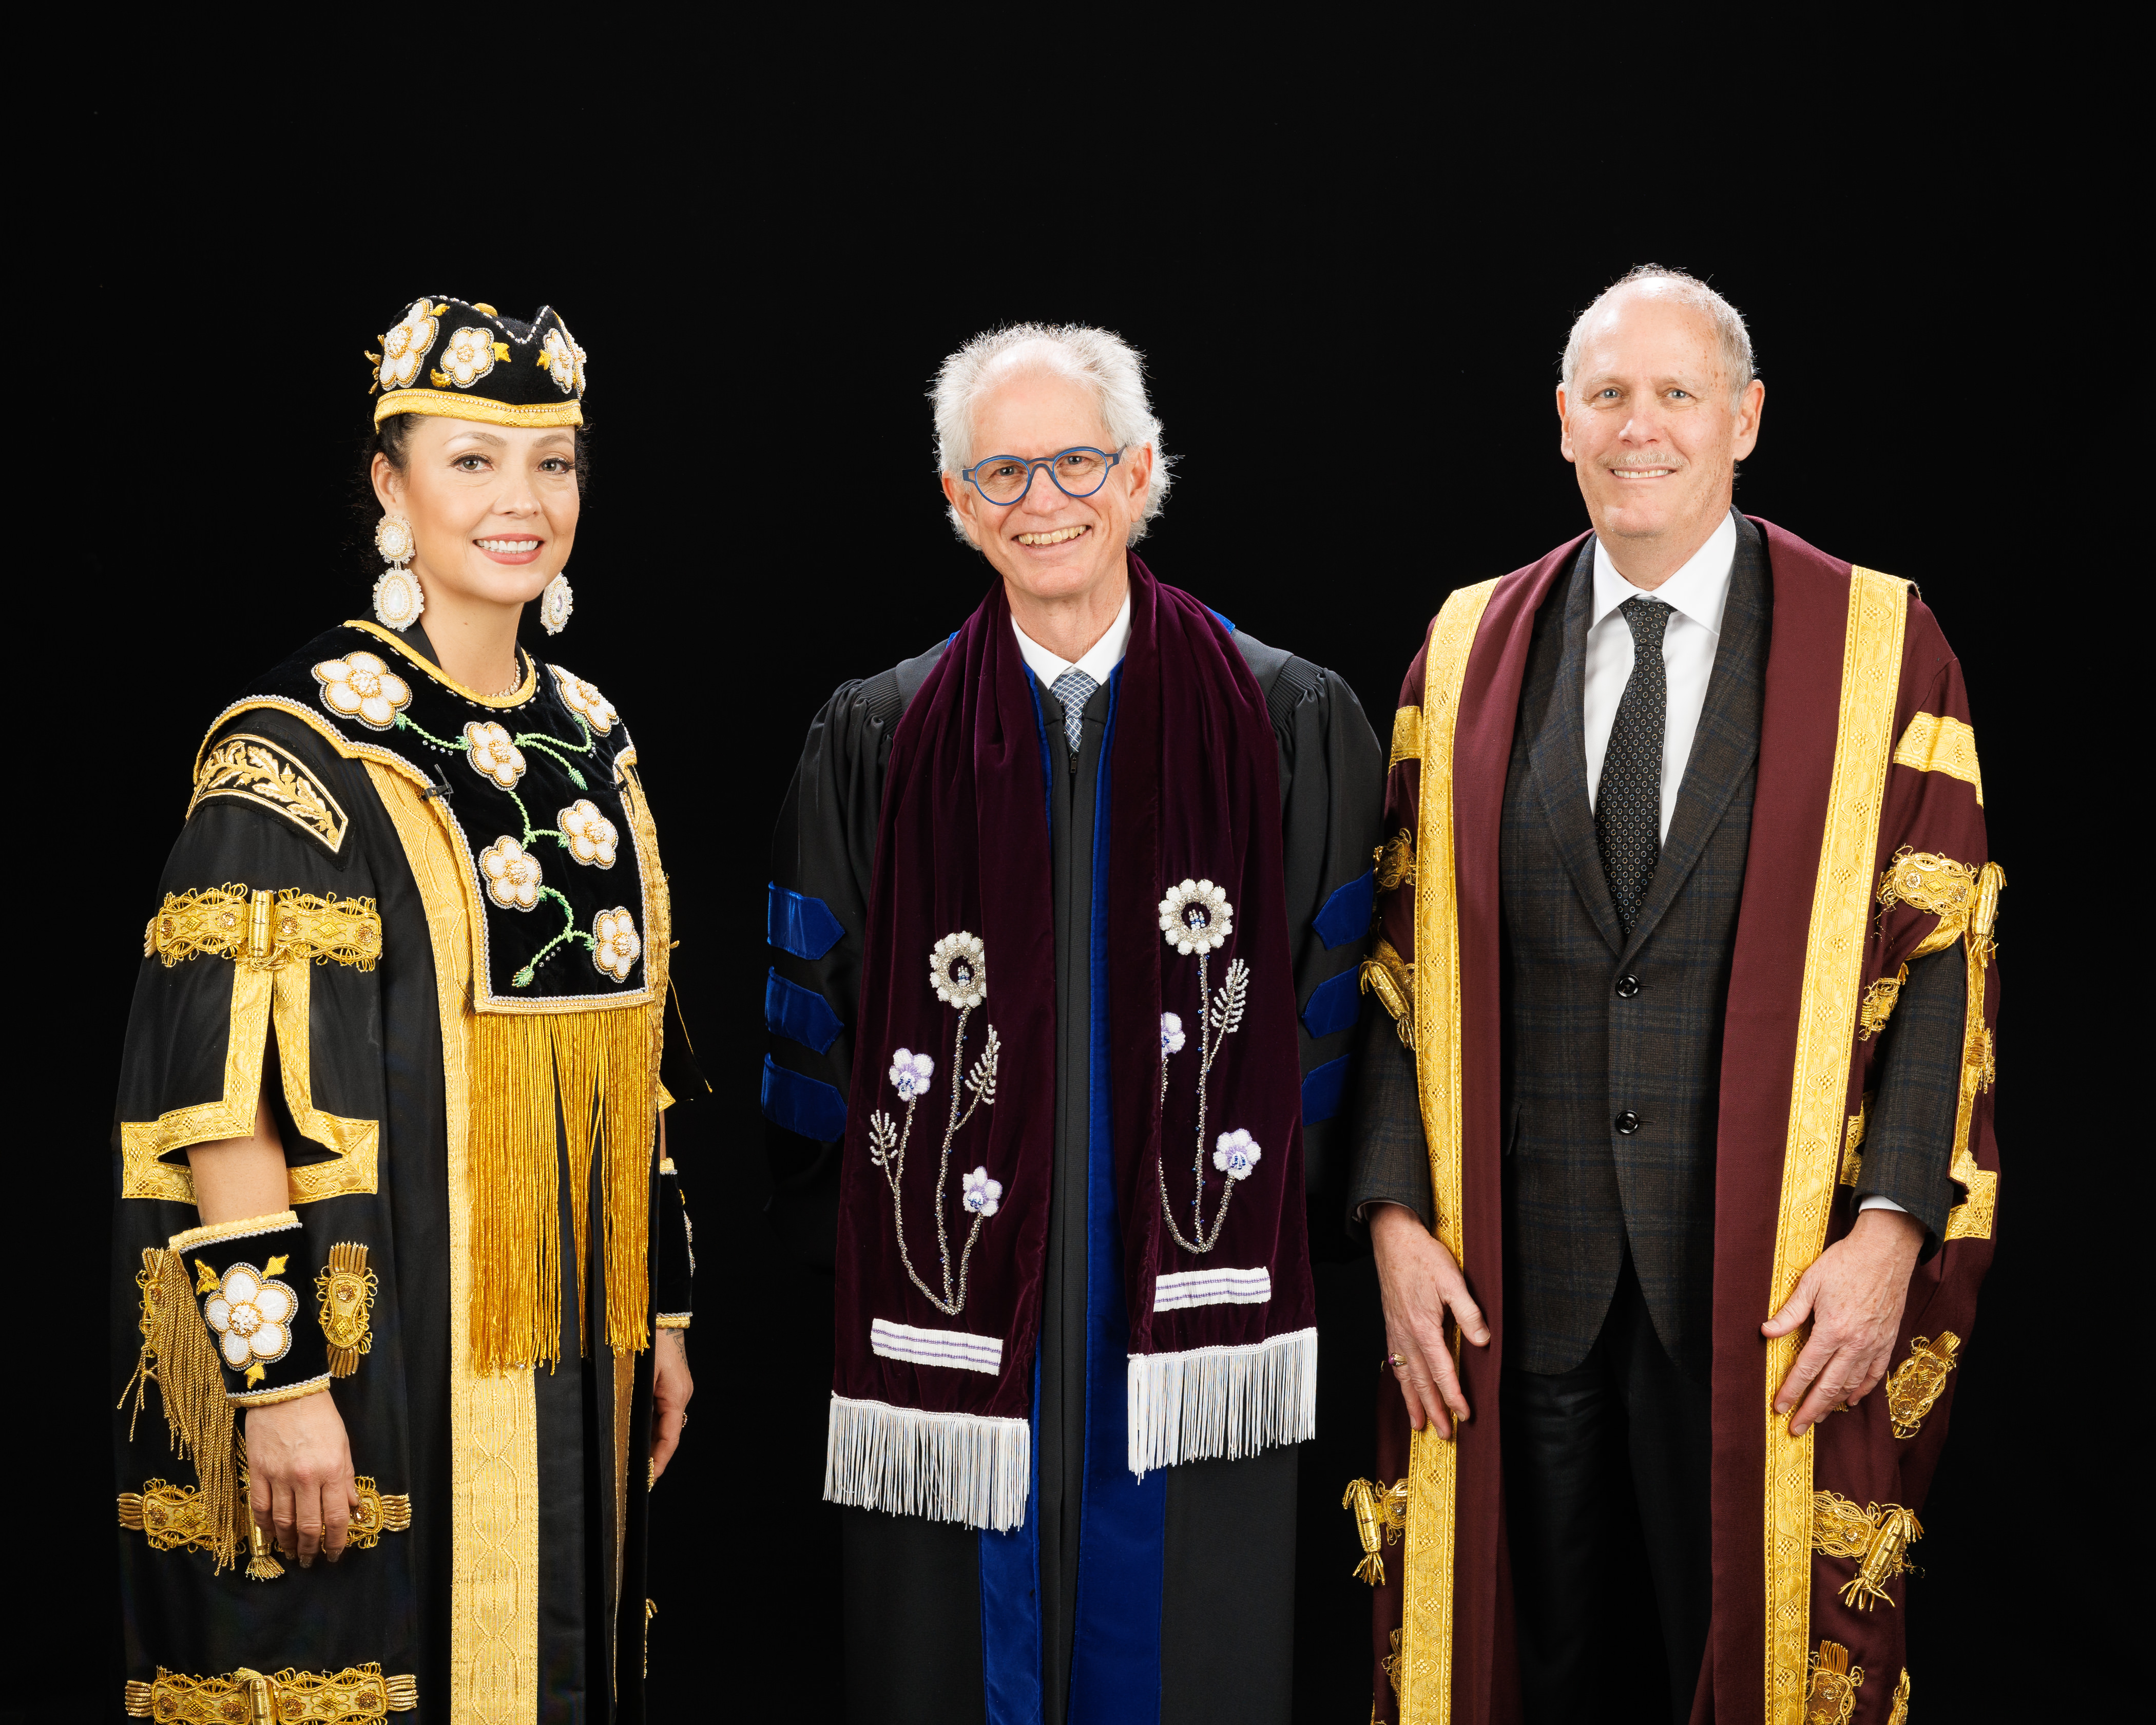 Chancellor Santee Smith, Daniel Coleman and President David Farrar all in their convocation regalia.